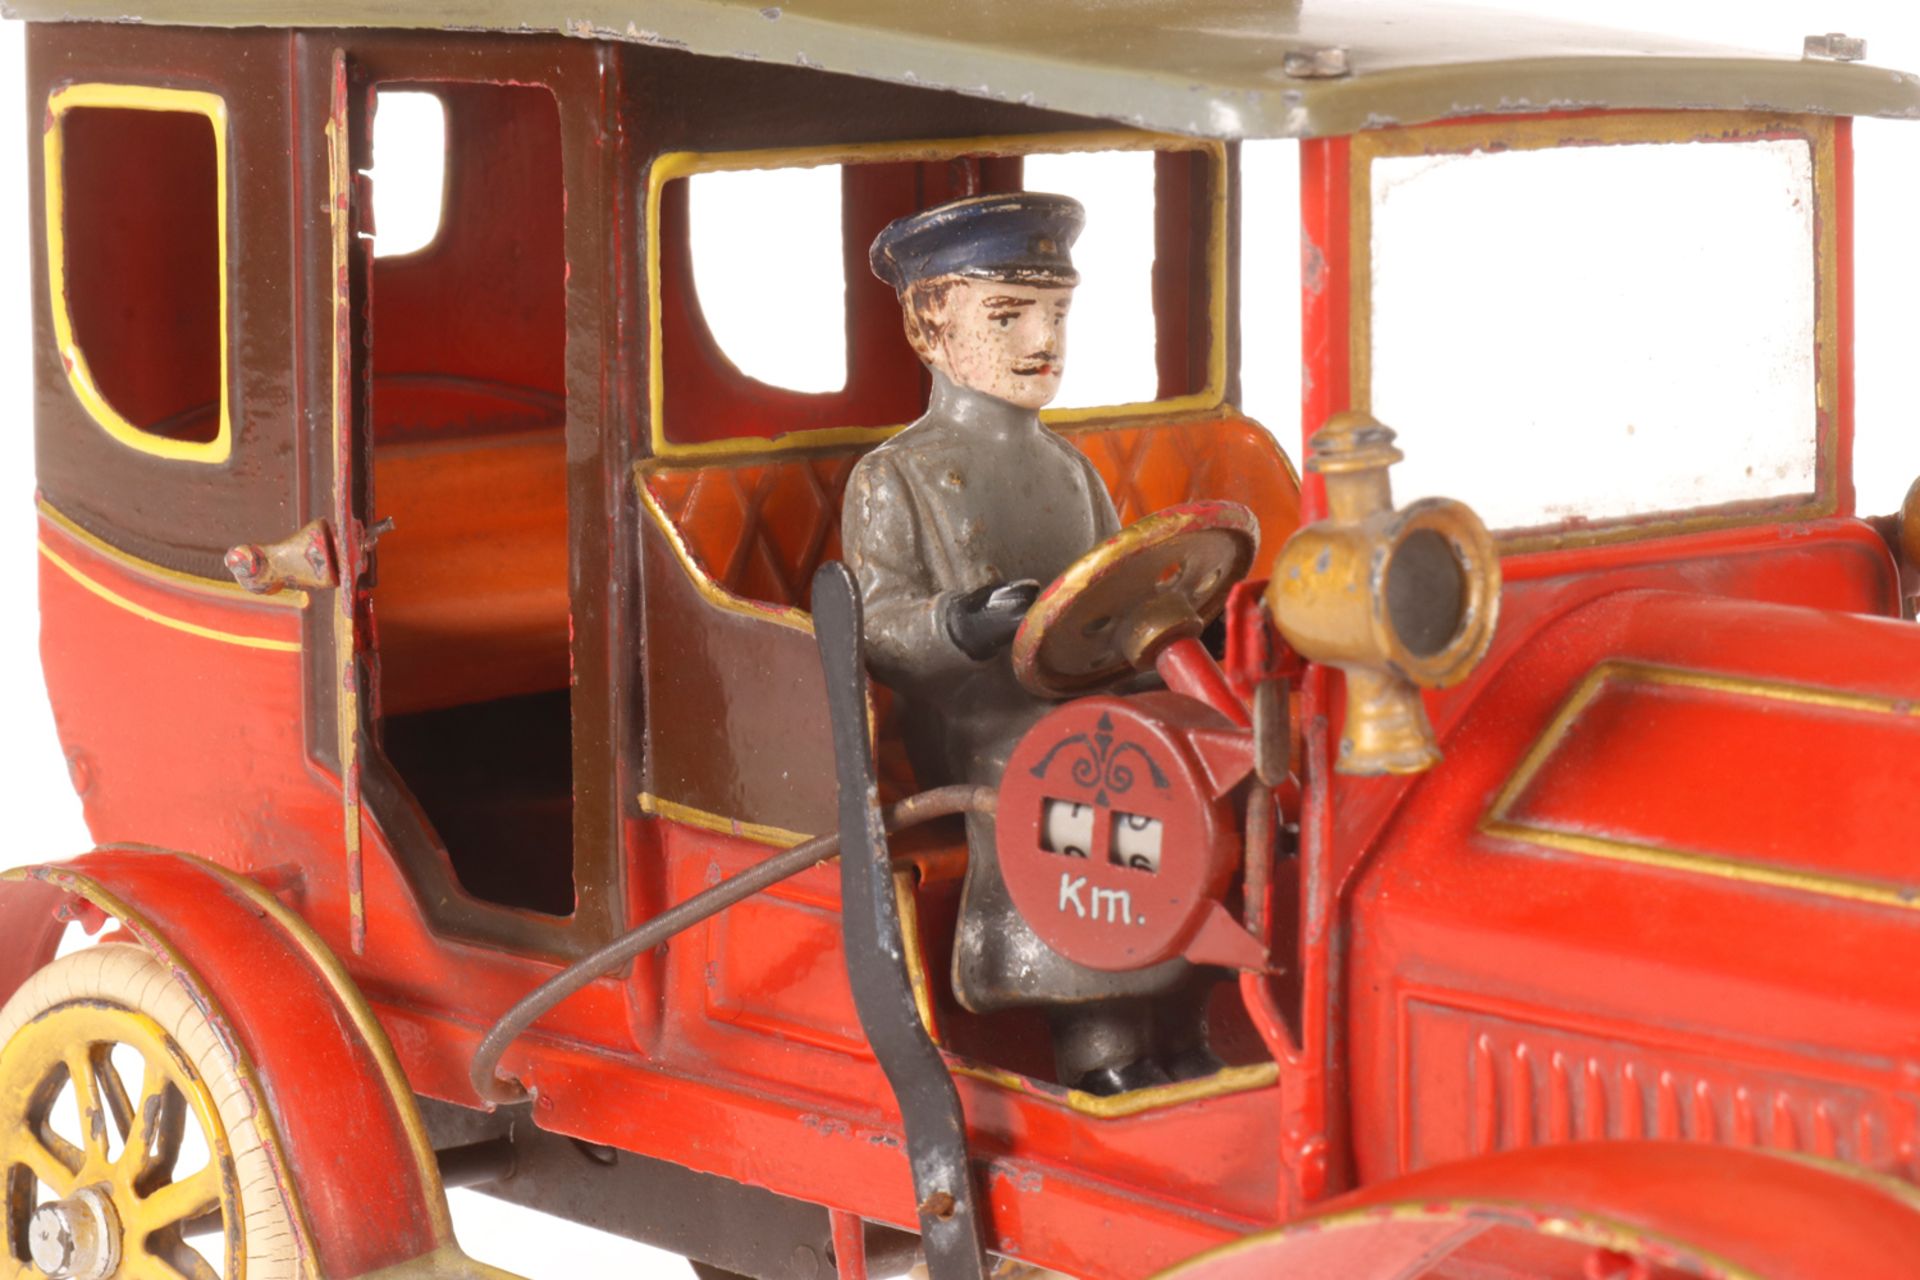 Bing Taxi, um 1905, rot handlackiert, mit Fahrer, Taxameter und 3 Scheinwerfern, 2 Türen zum Öffnen, - Bild 5 aus 6